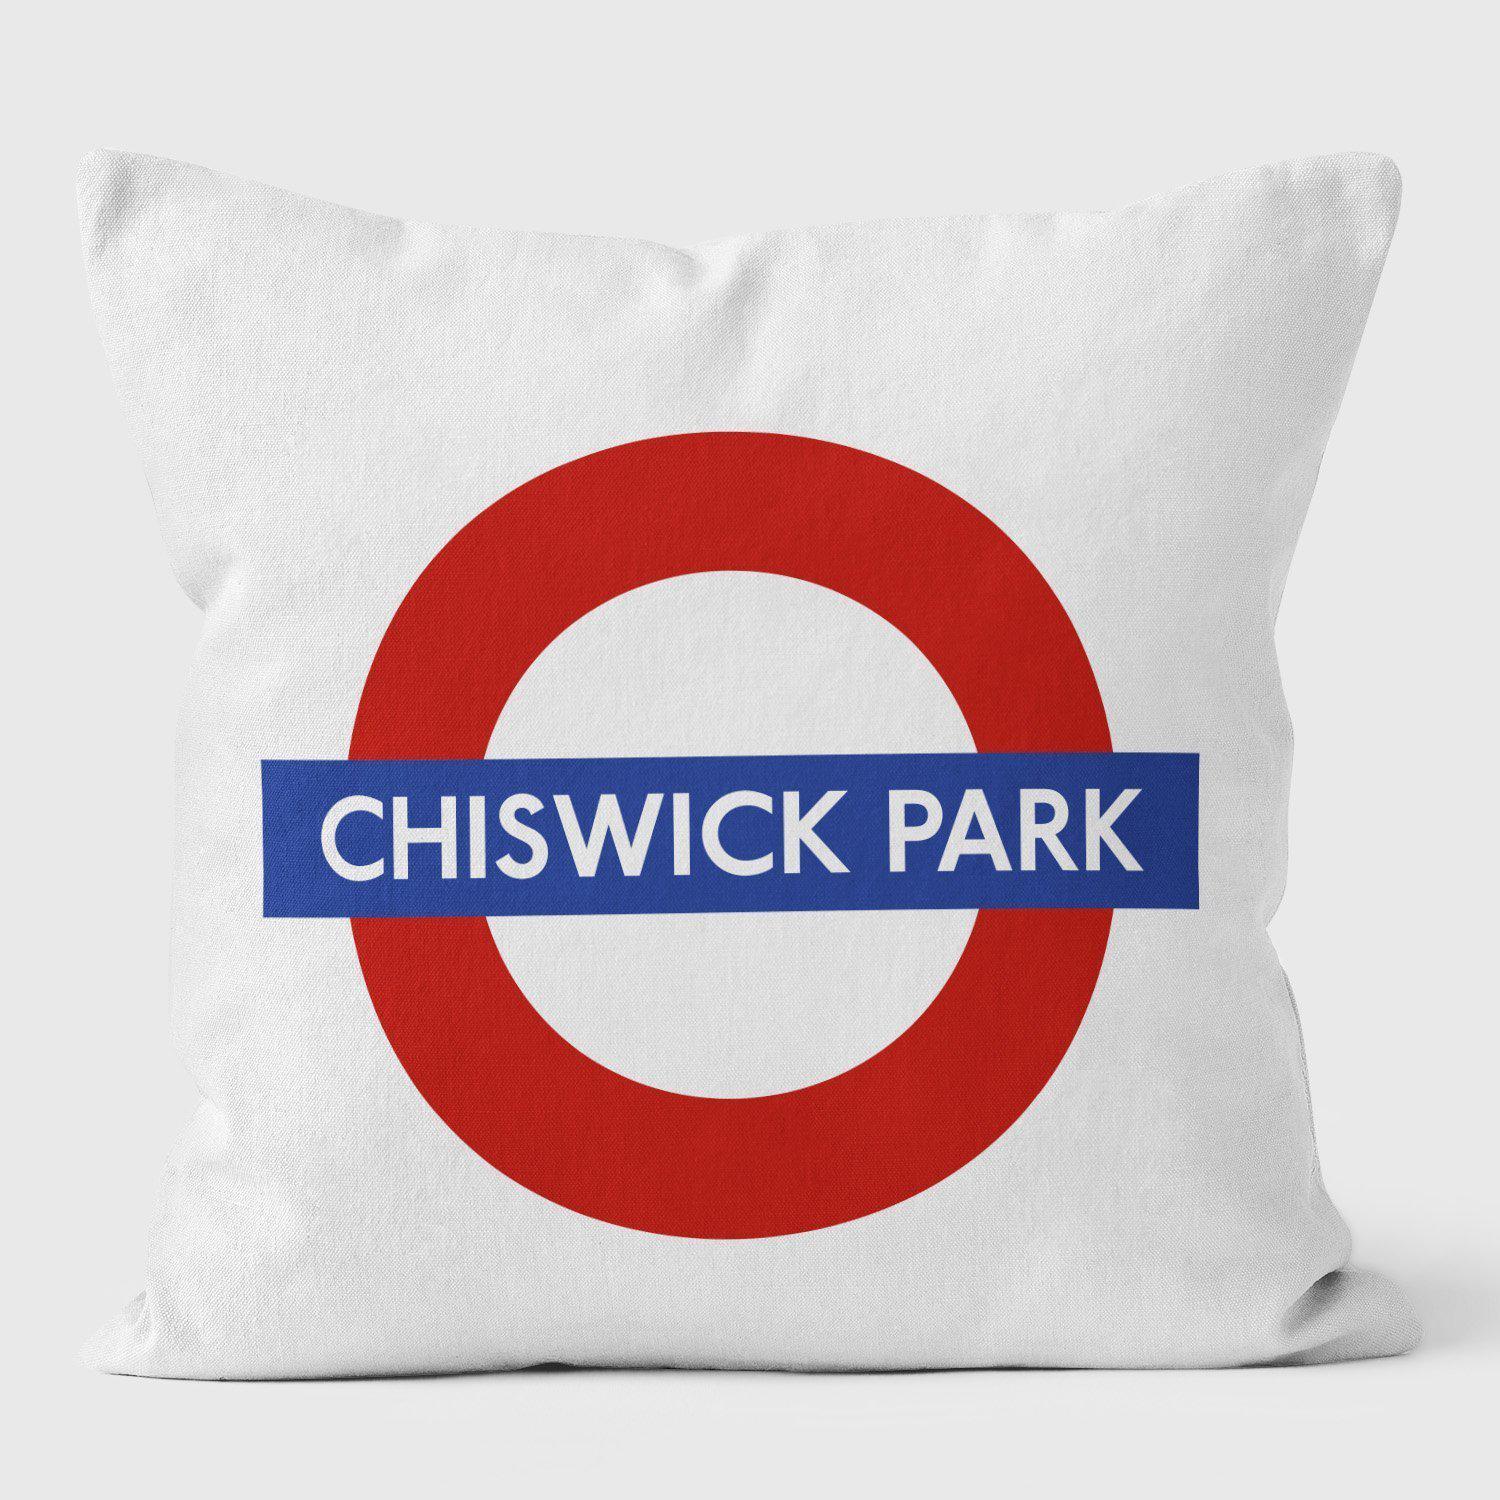 Chiswick Park London Underground Tube Station Roundel Cushion - Handmade Cushions UK - WeLoveCushions